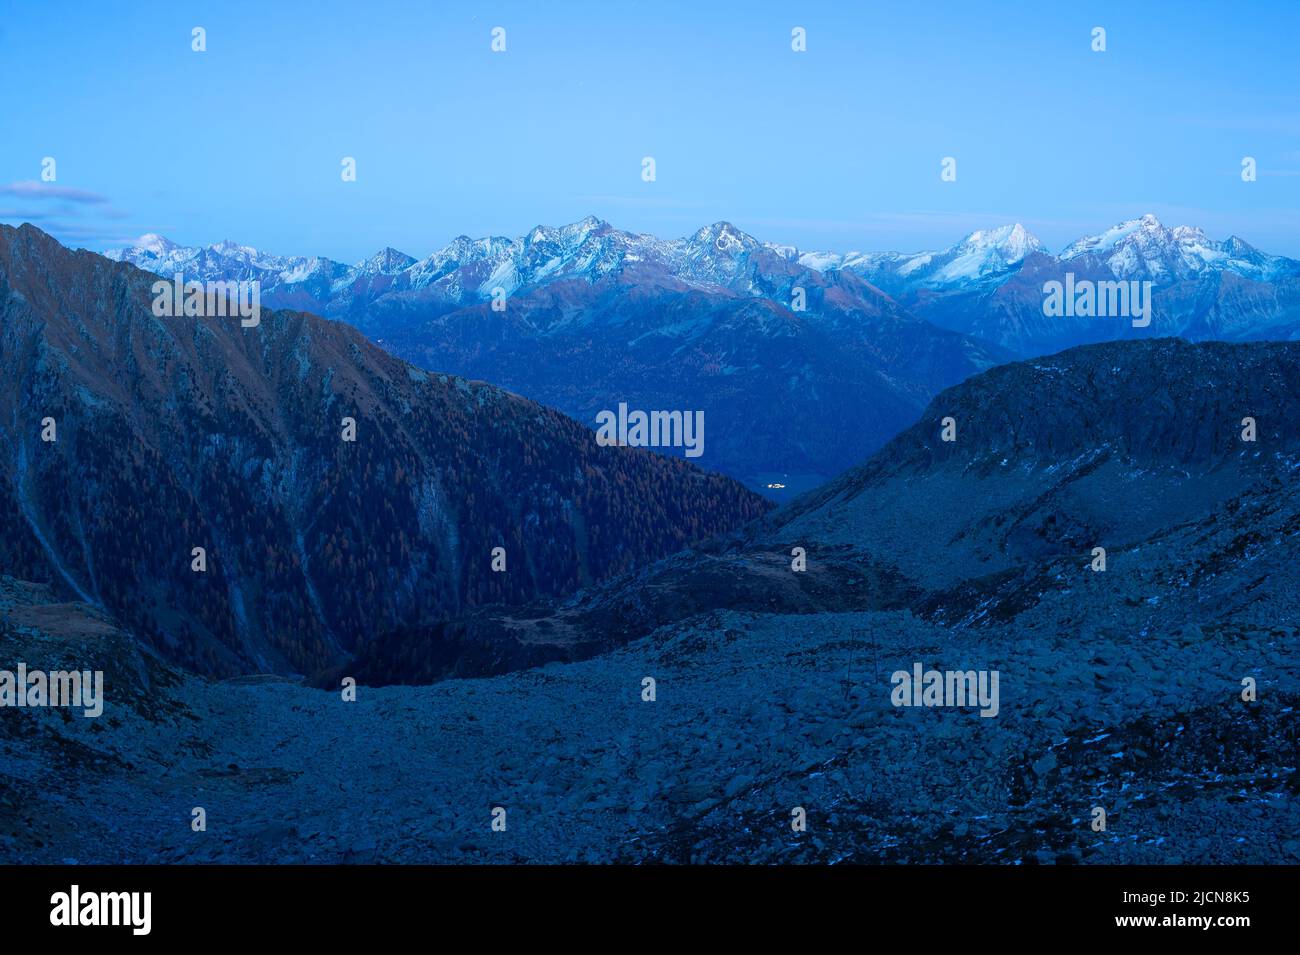 Paisaje de los Alpes al atardecer con picos nevados de montaña en el fondo, Austria Foto de stock